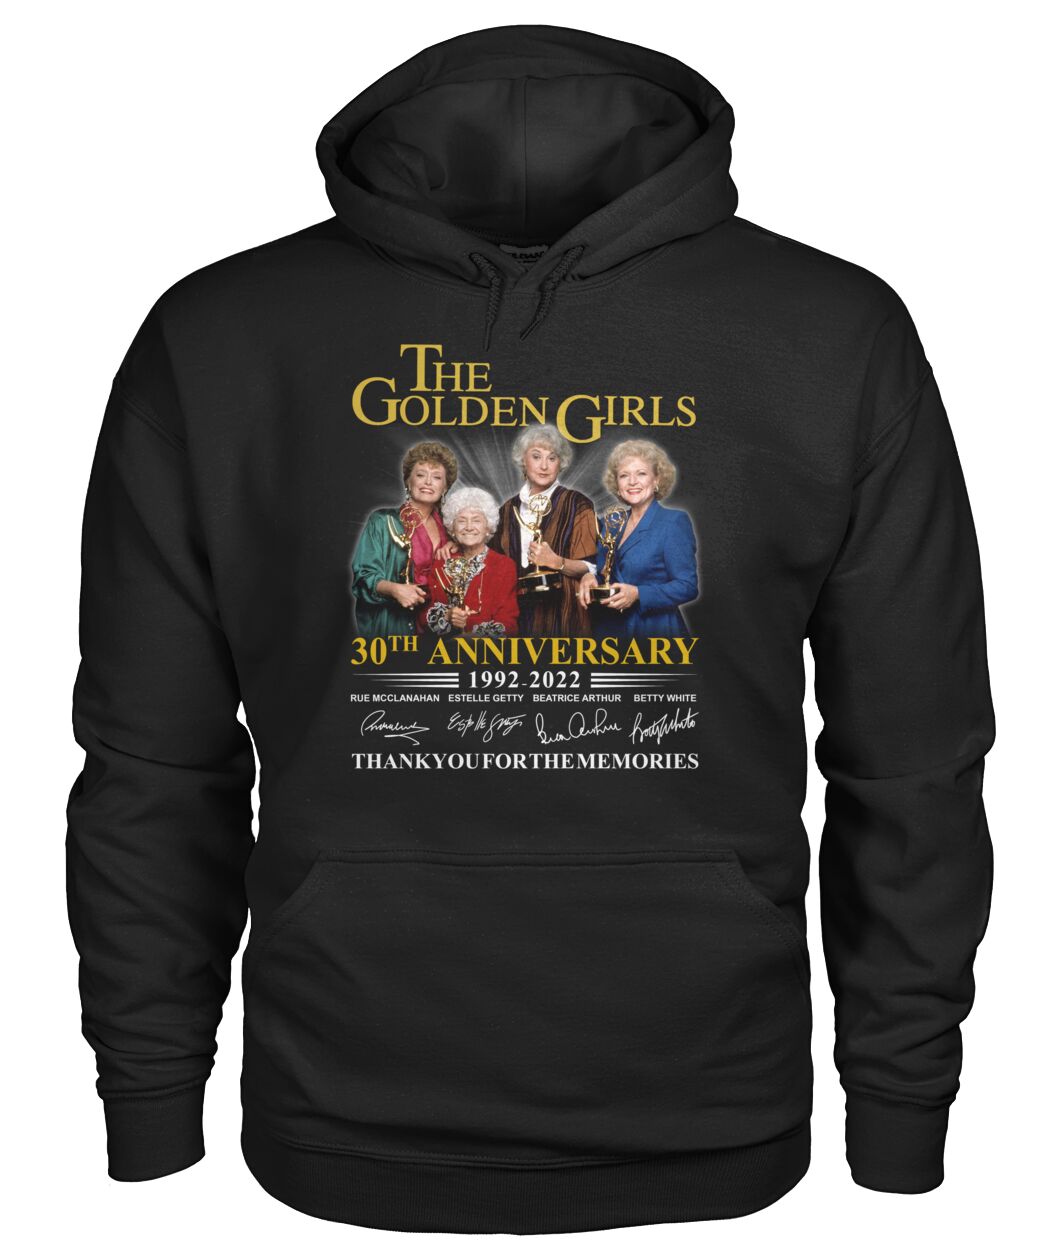 The Golden Girls 30th Anniversary 1992-2022 shirt, hoodie 5